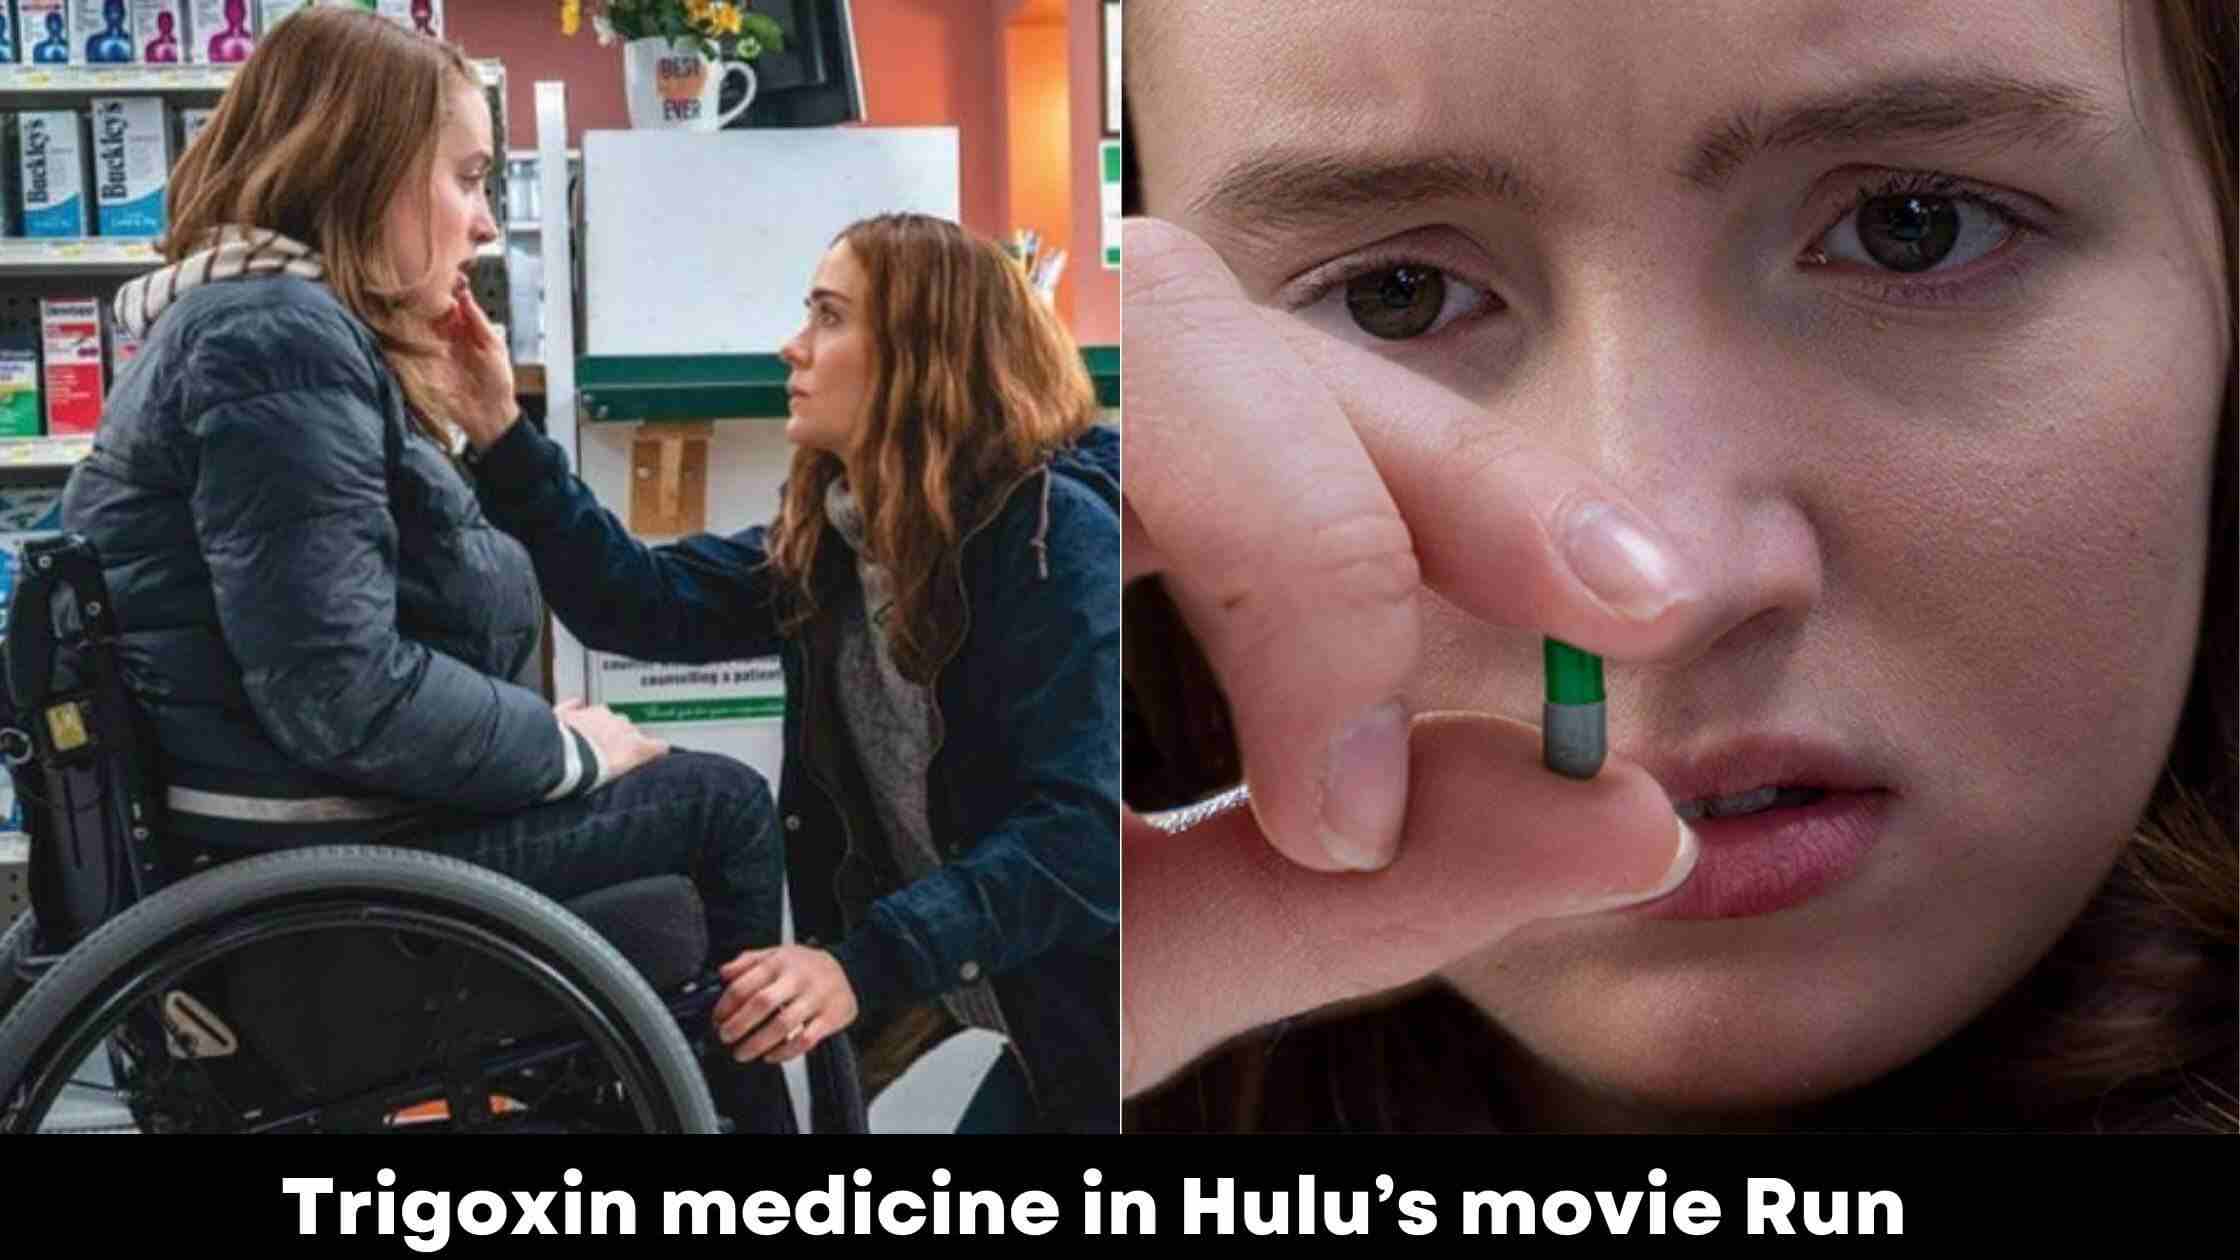 What Is Trigoxin medicine in Hulu's movie Run